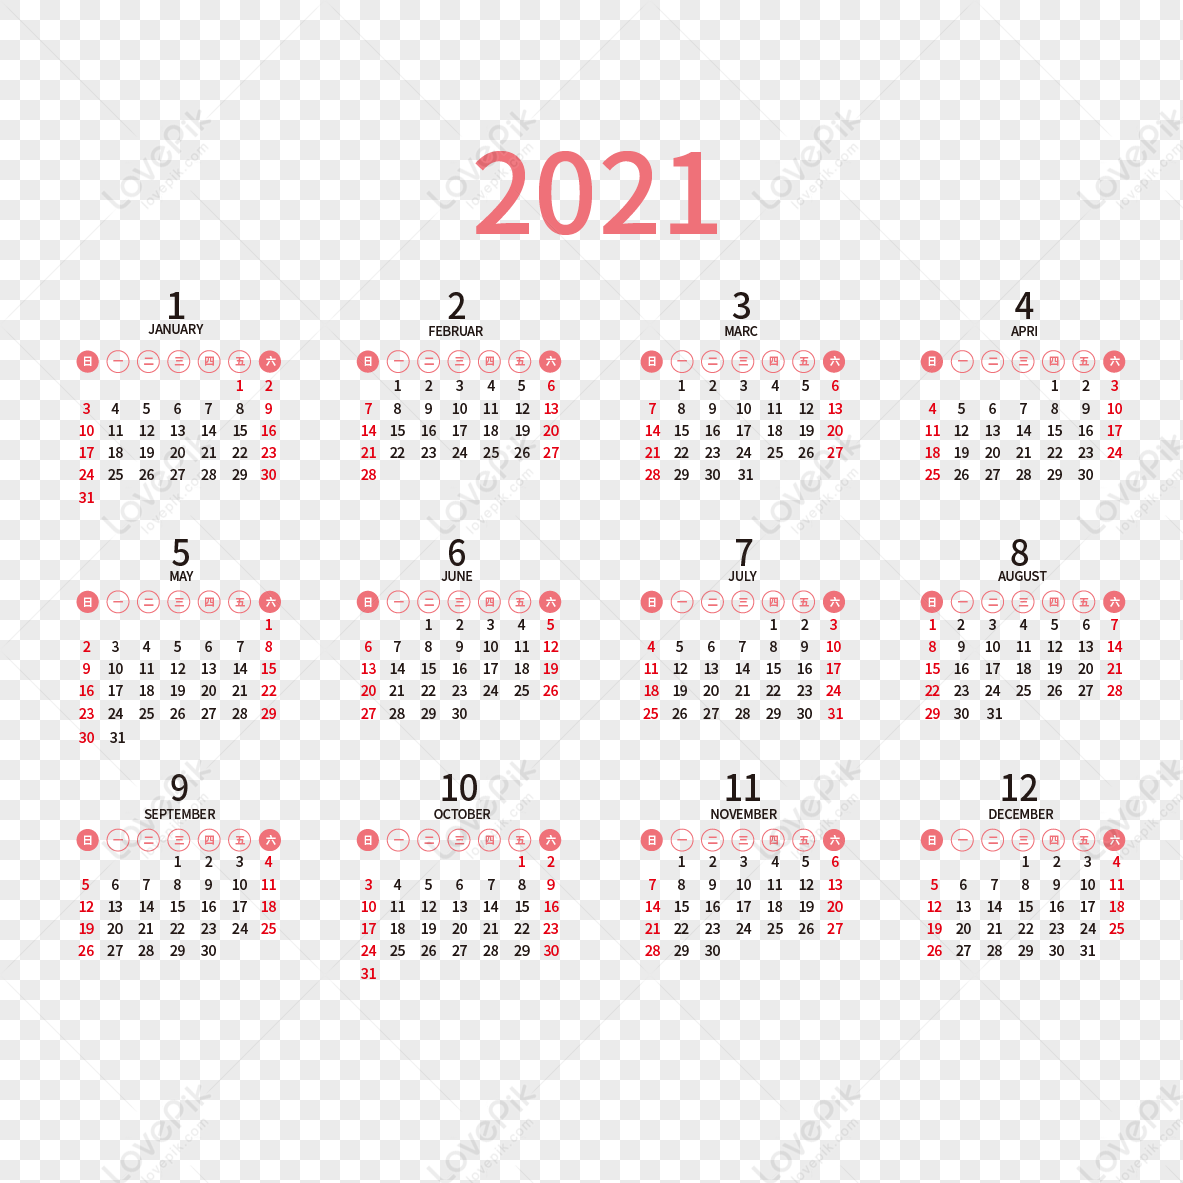 2021 desk calendar, date, desk, calendar png image free download